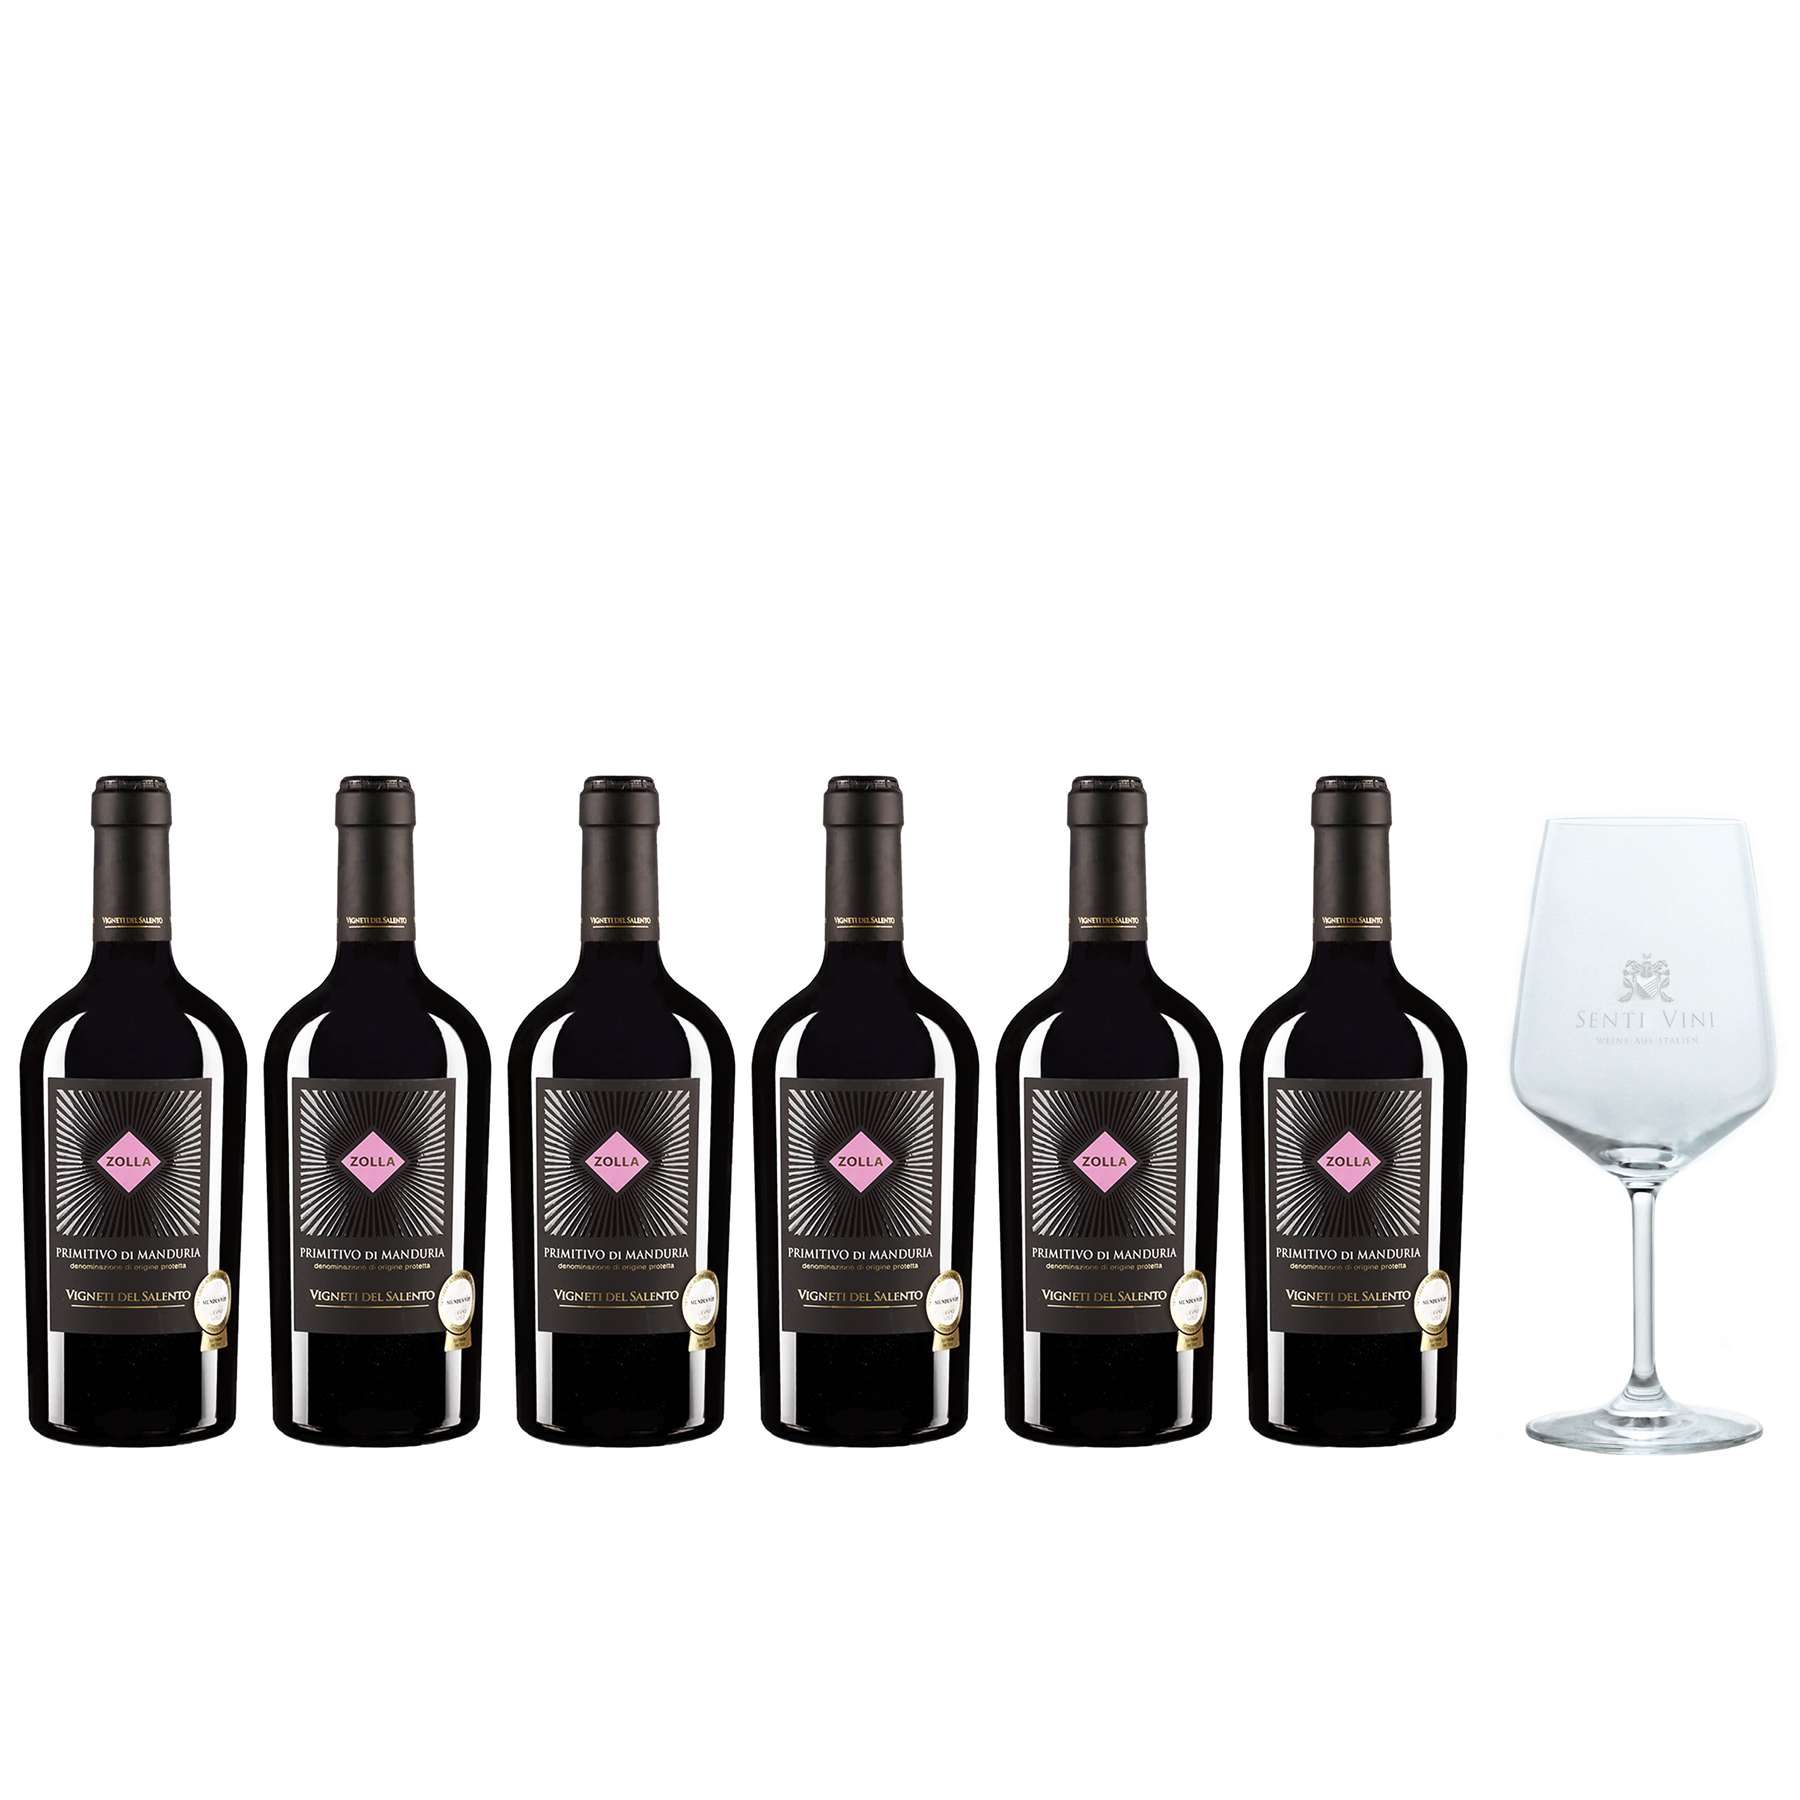 Sparpaket Vigneti del Salento Zolla Primitivo di Manduria DOP 2020 (6 x  0,75l) mit Spiegelau Senti Vini Weinglas | Online kaufen bei Senti Vini -  Weine aus Italien